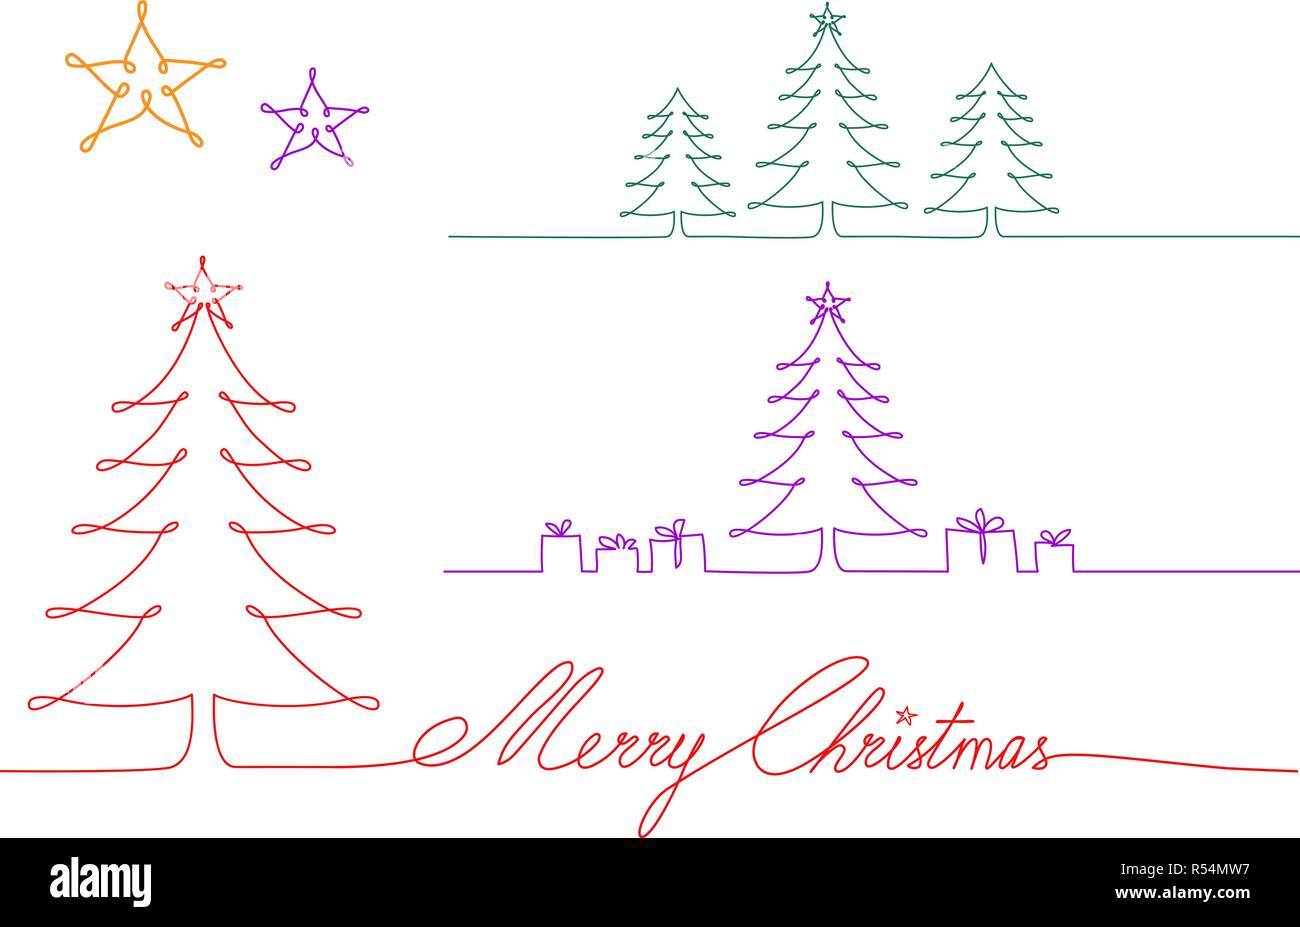 Eine durchgehende Linie Weihnachtsbäume, einzelne Linie zeichnen, Vector Illustration für Weihnachtskarten, saisonale Hintergrund Stock Vektor